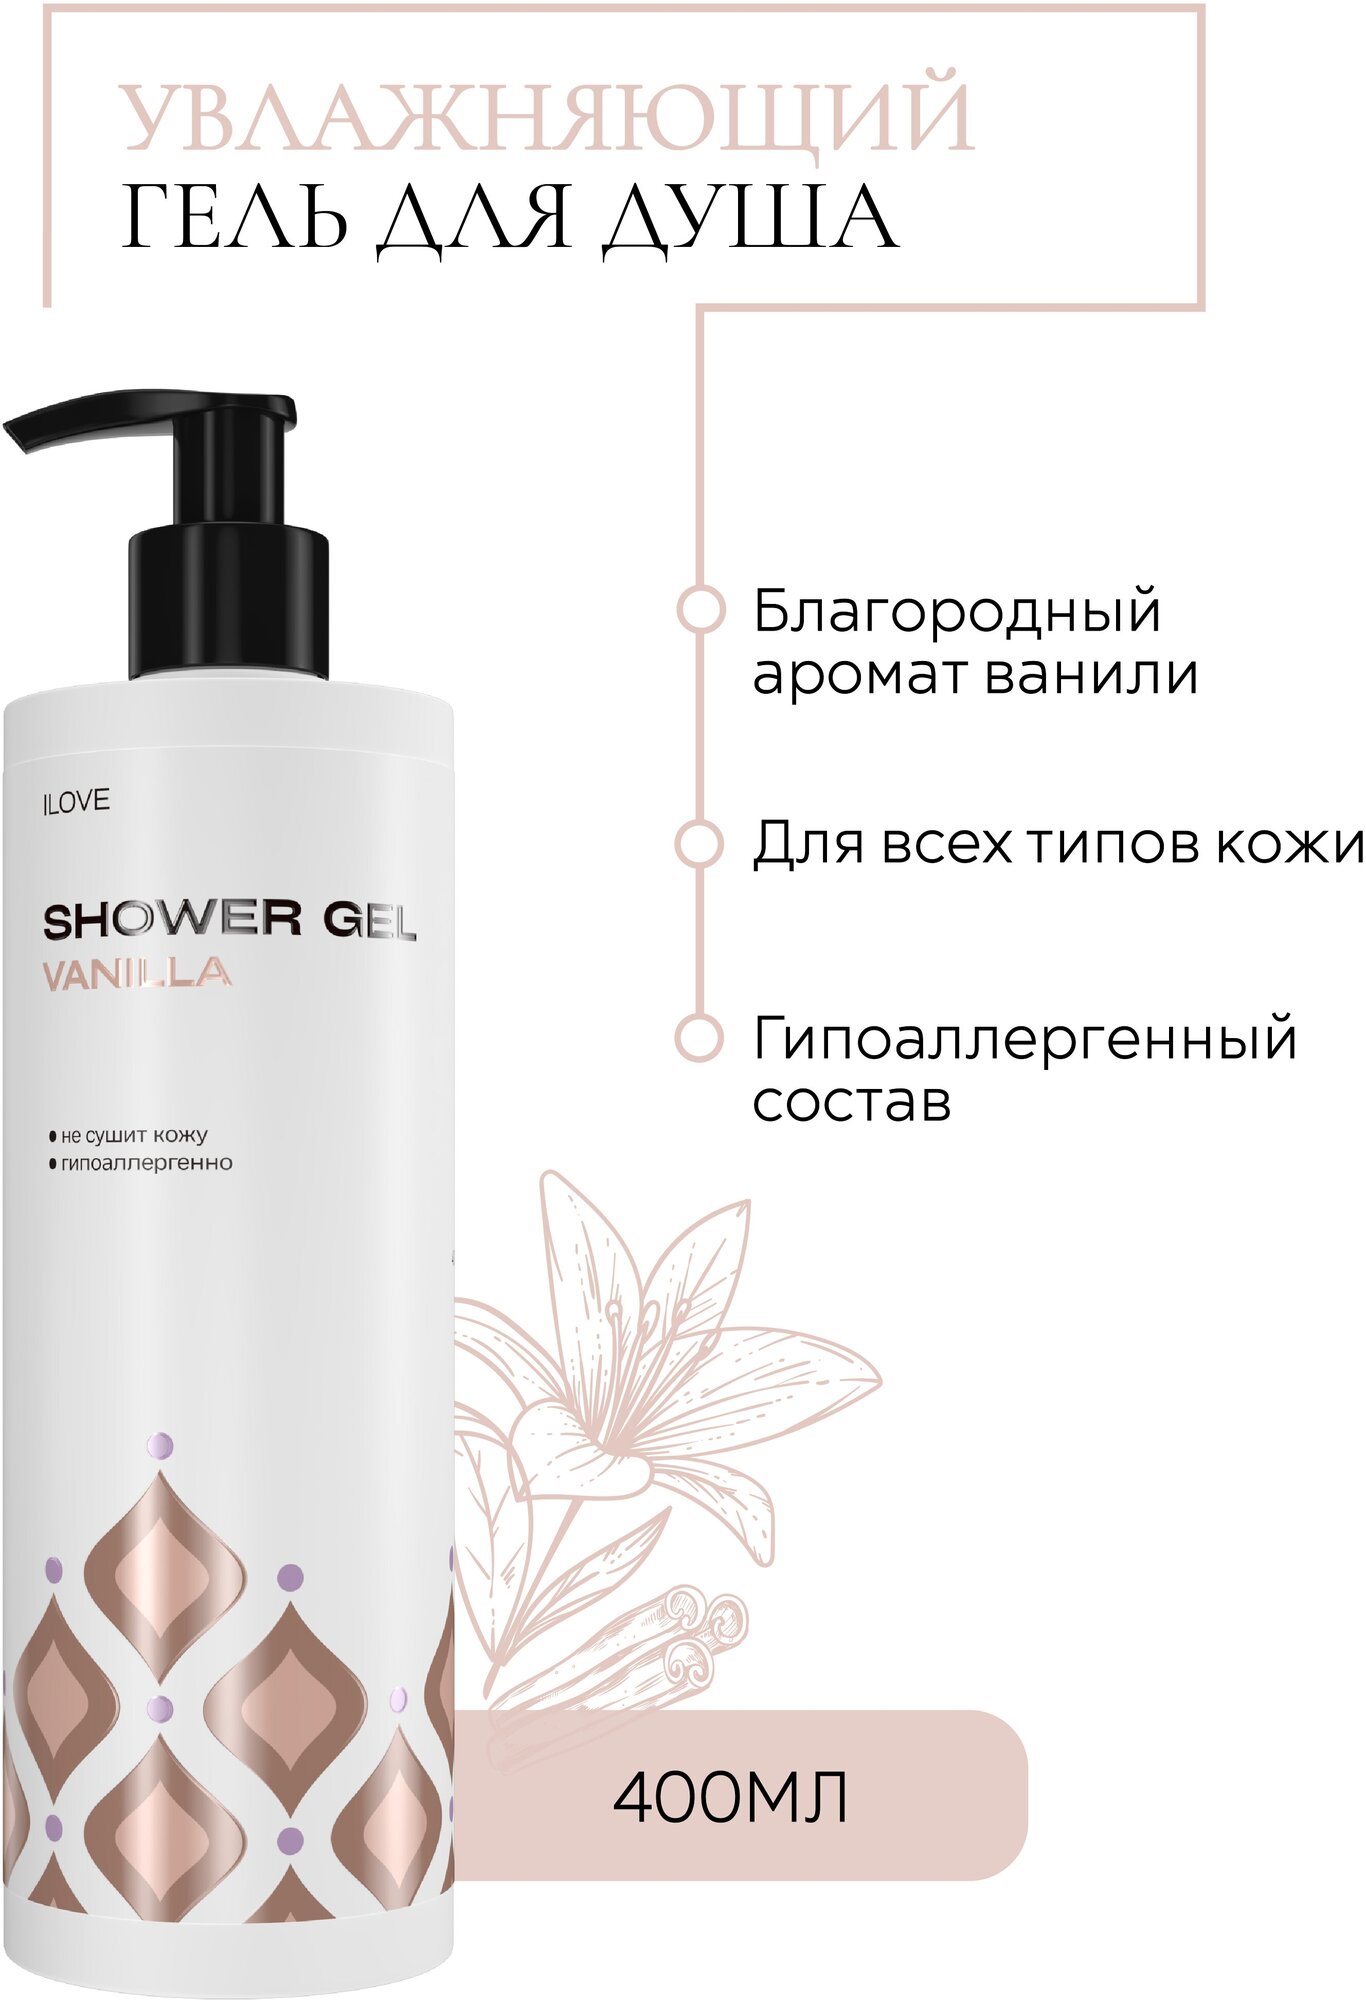 ILOVE mg, Увлажняющий гель-крем для душа с ароматом ванили для бережного очищения и глубокого питания кожи, гипоаллергенно, 400мл